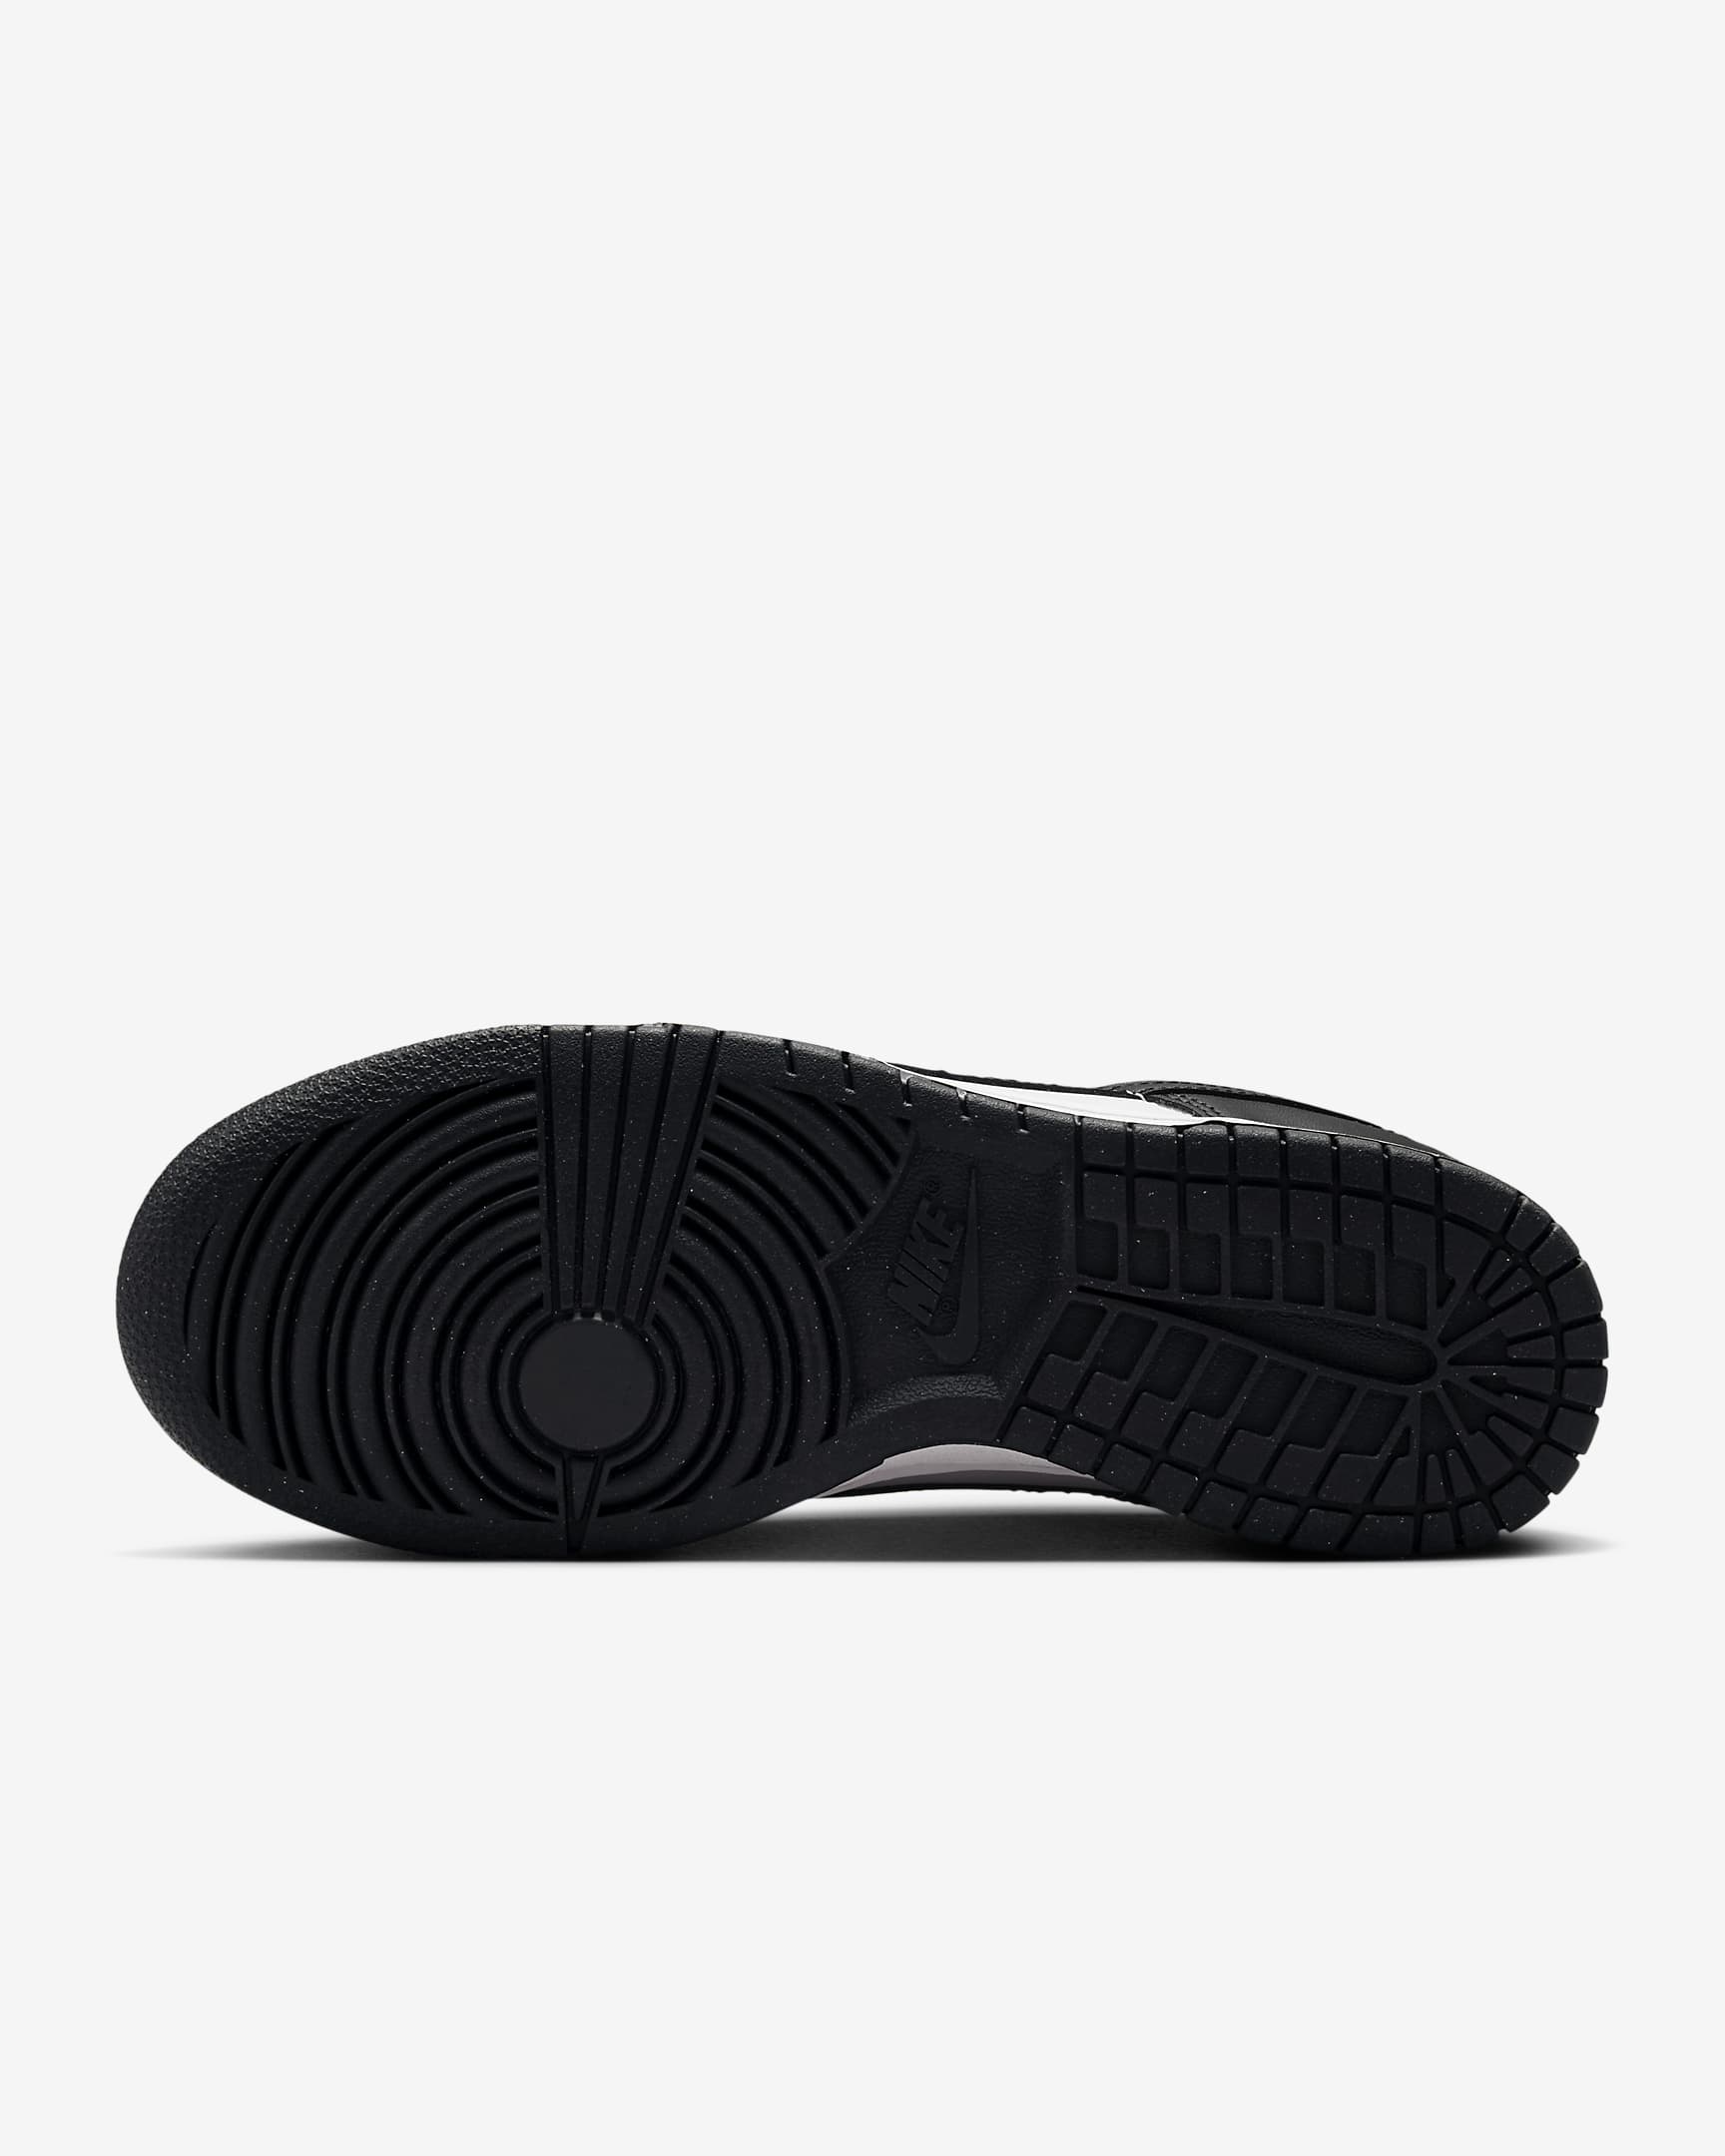 Chaussure Nike Dunk Low pour femme - Blanc/Noir